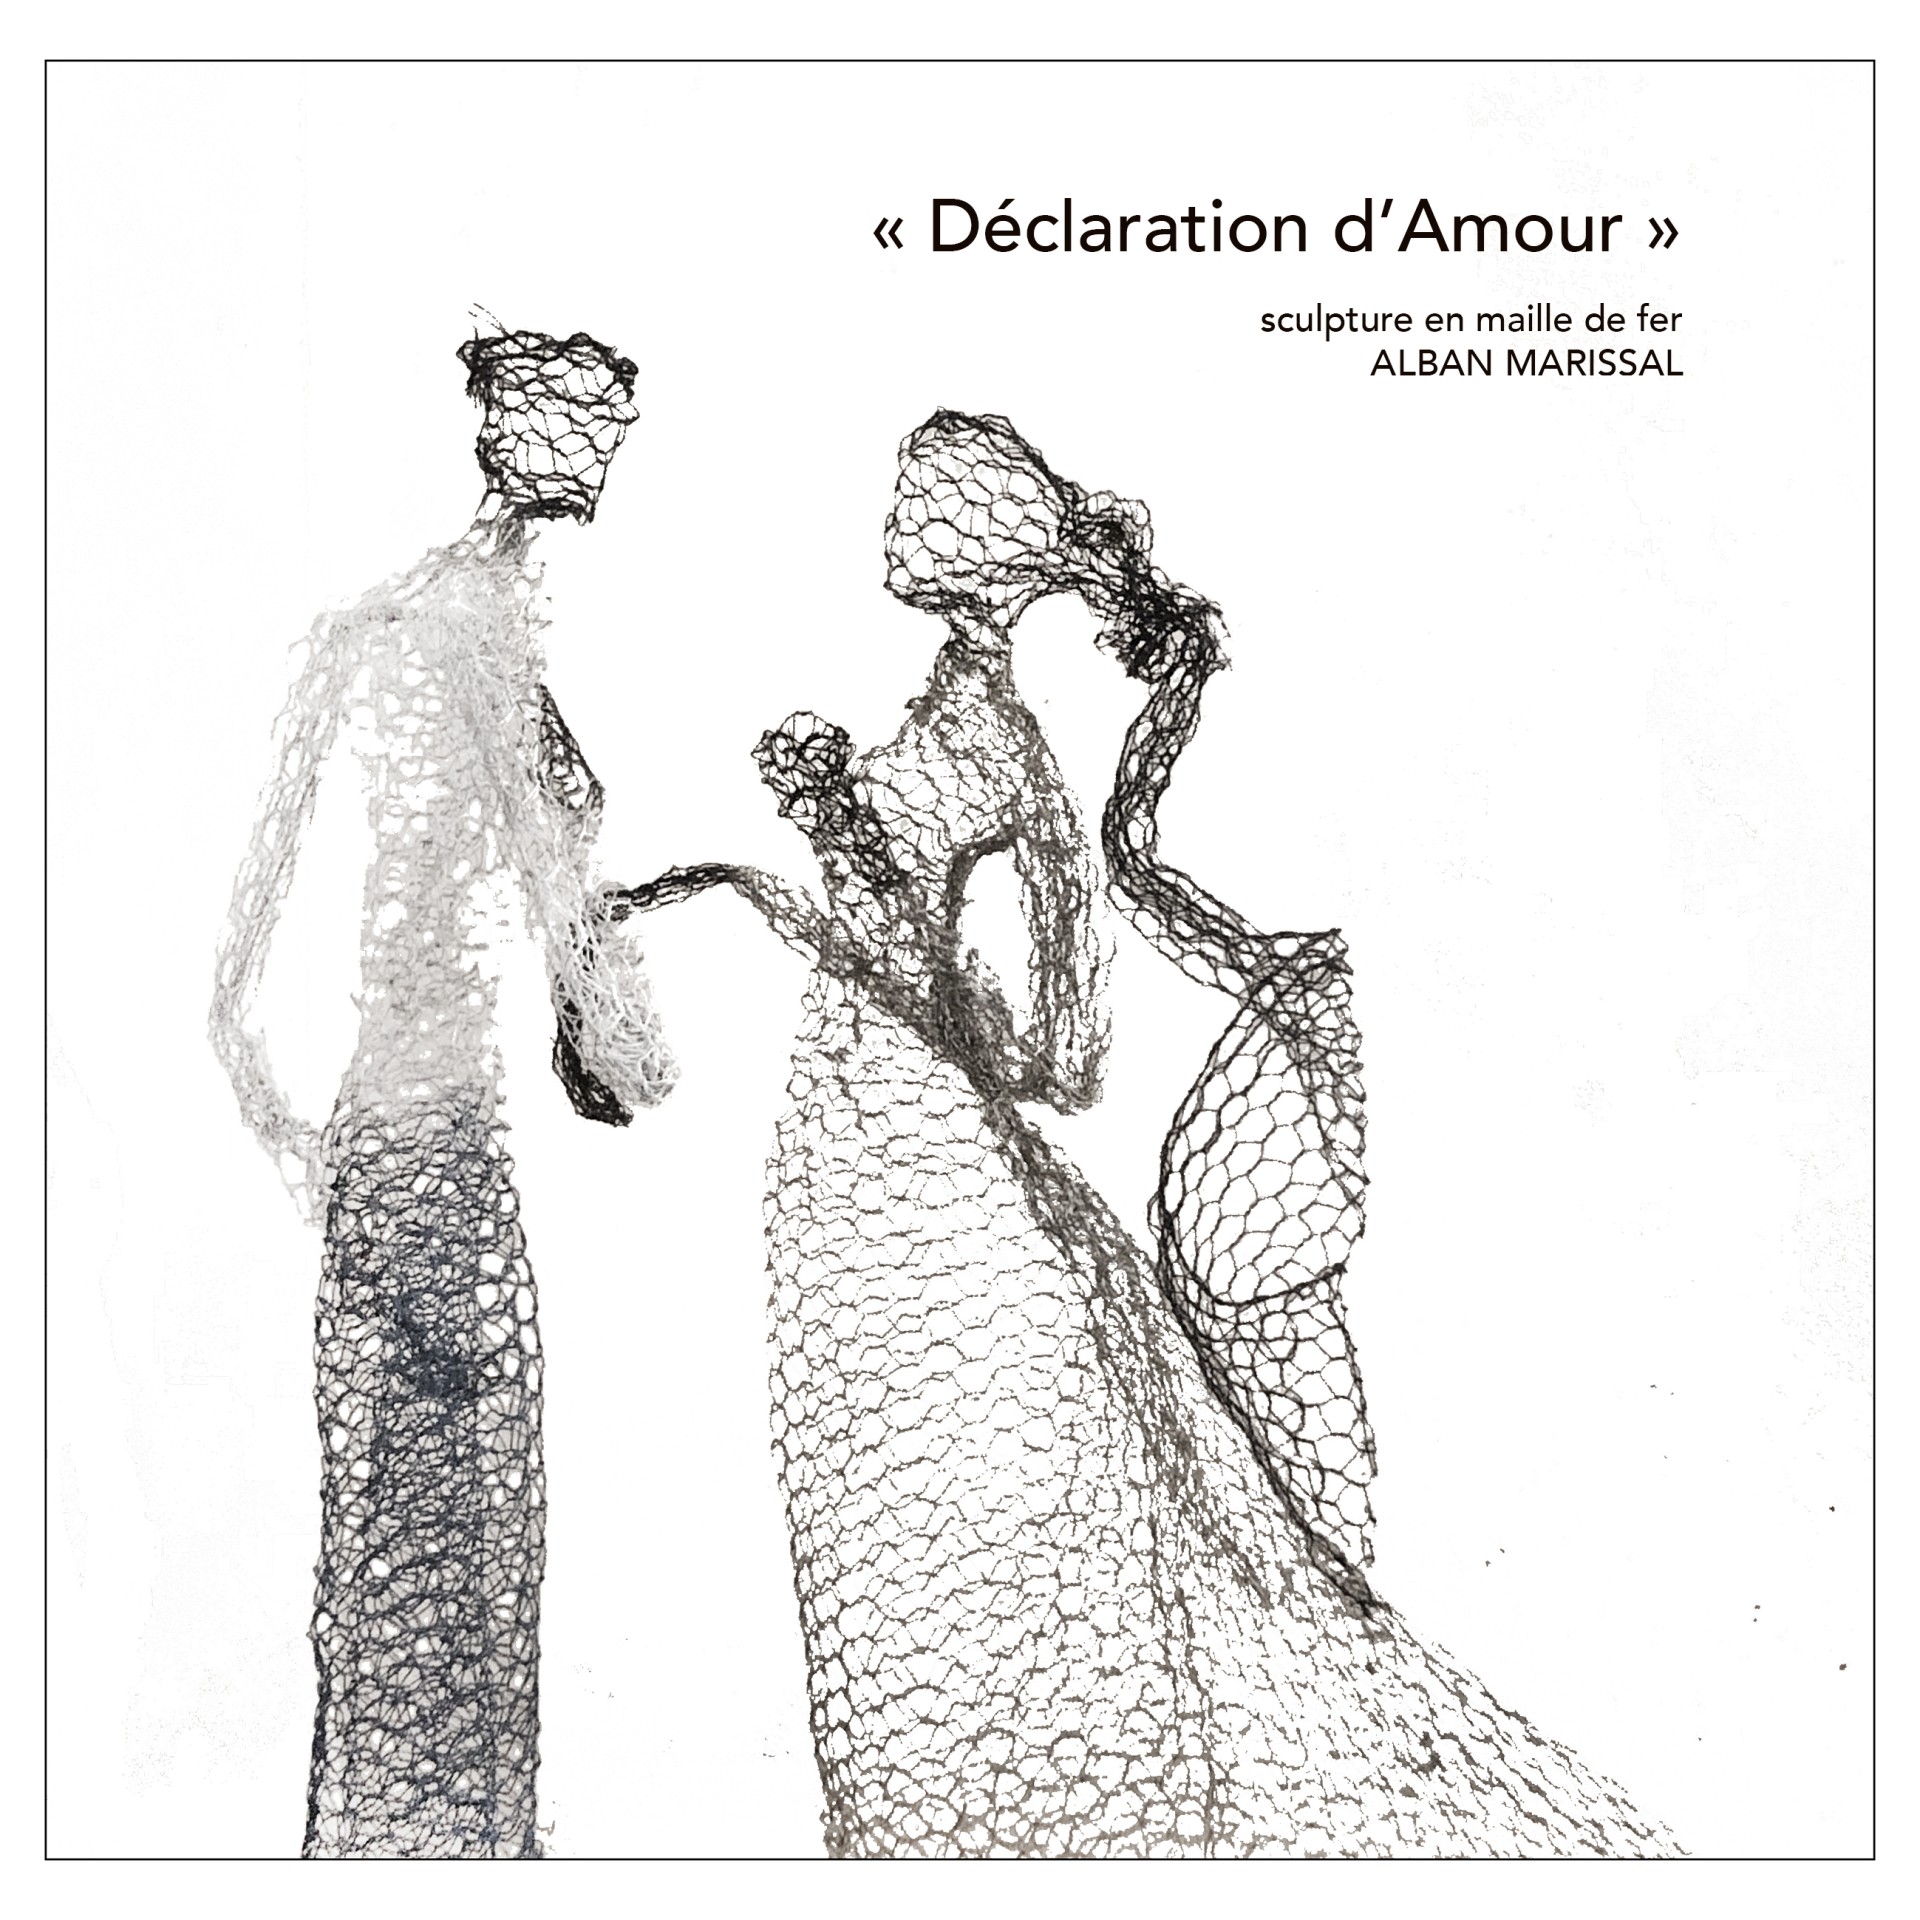 Declaration d'Amour